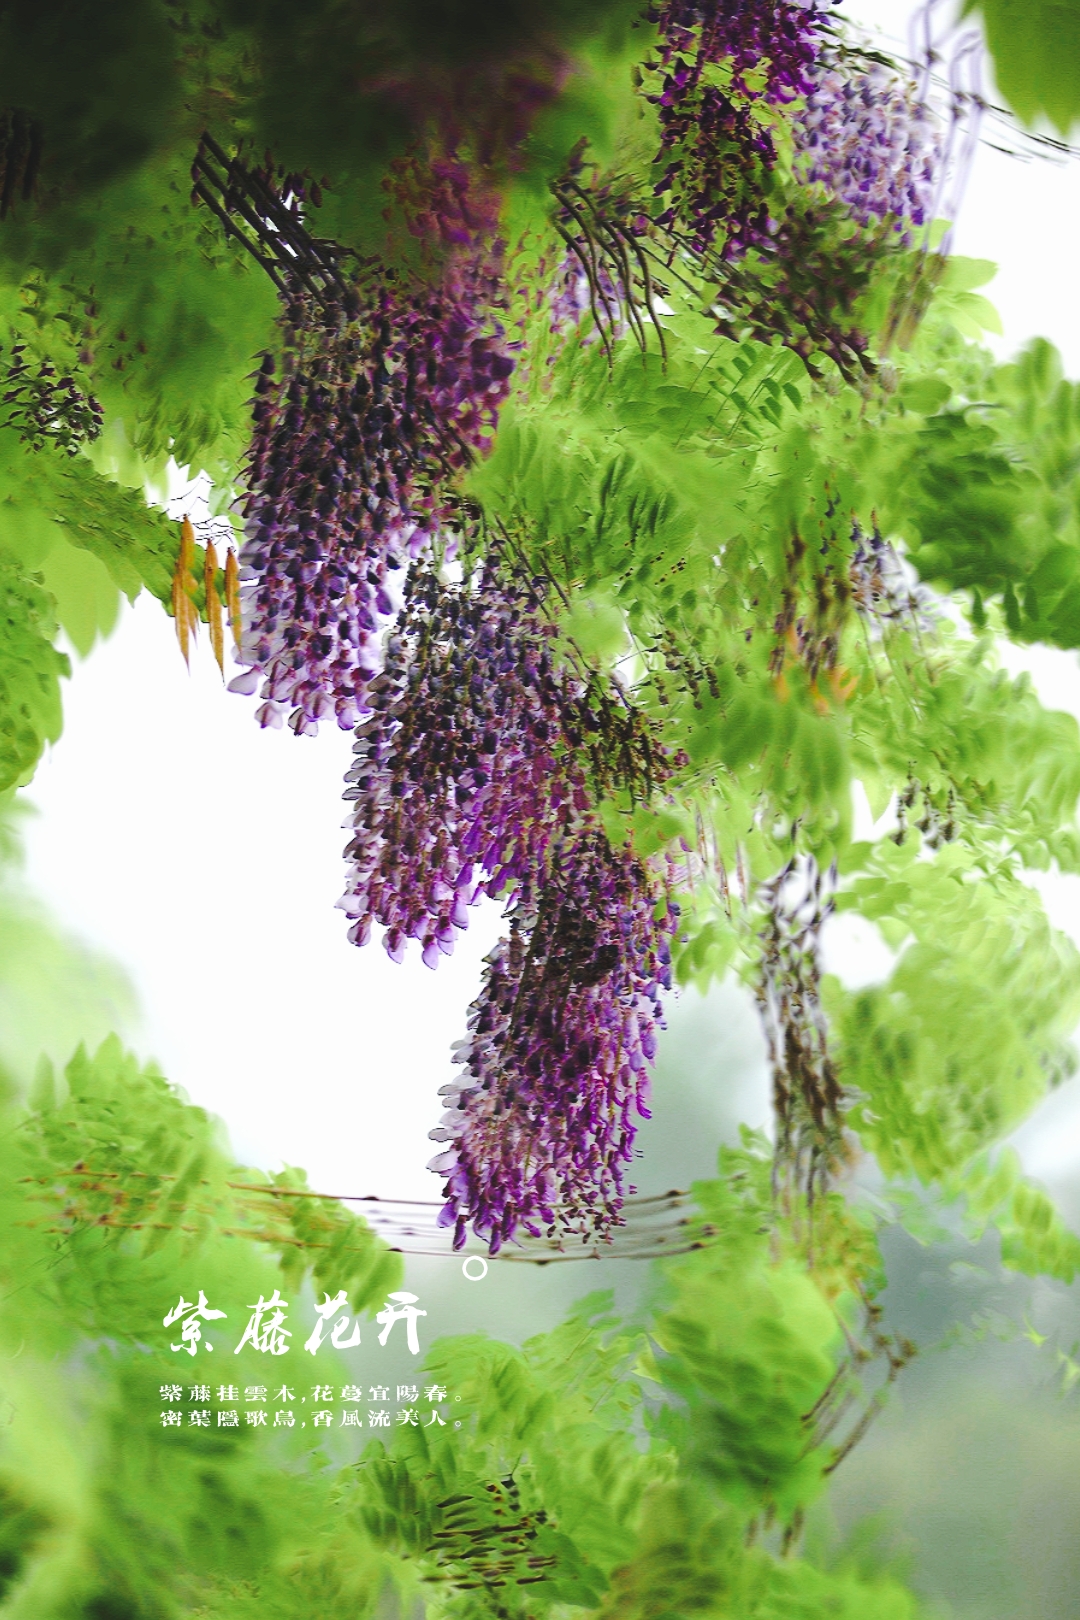 唐代诗人李白的《紫藤树》把紫藤的枝型,花蔓,浓密绿叶和鸟语花香都写